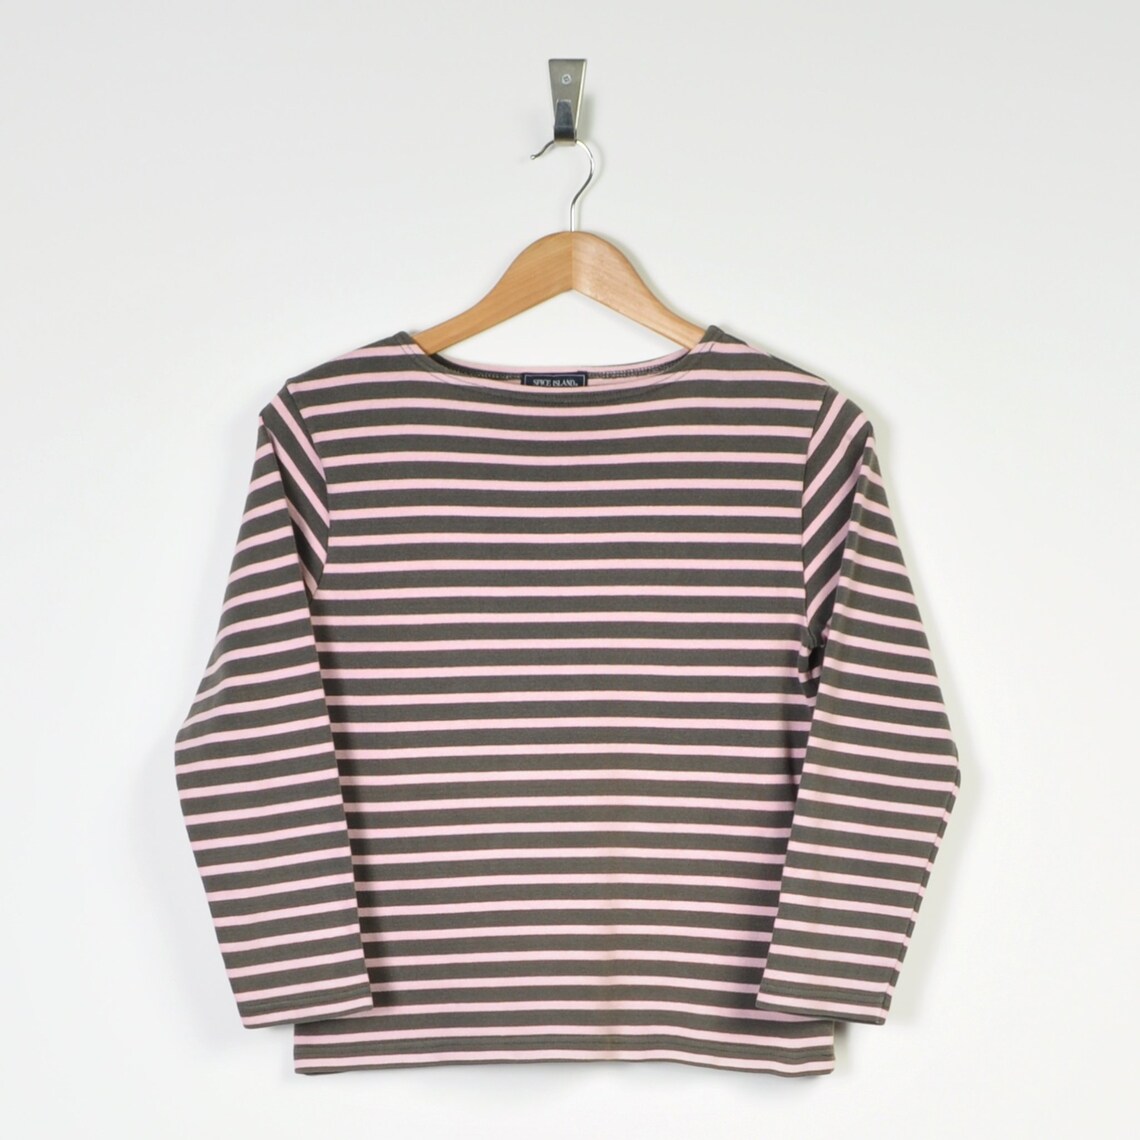 Retro Striped T-Shirt Brown Ladies Medium | Etsy